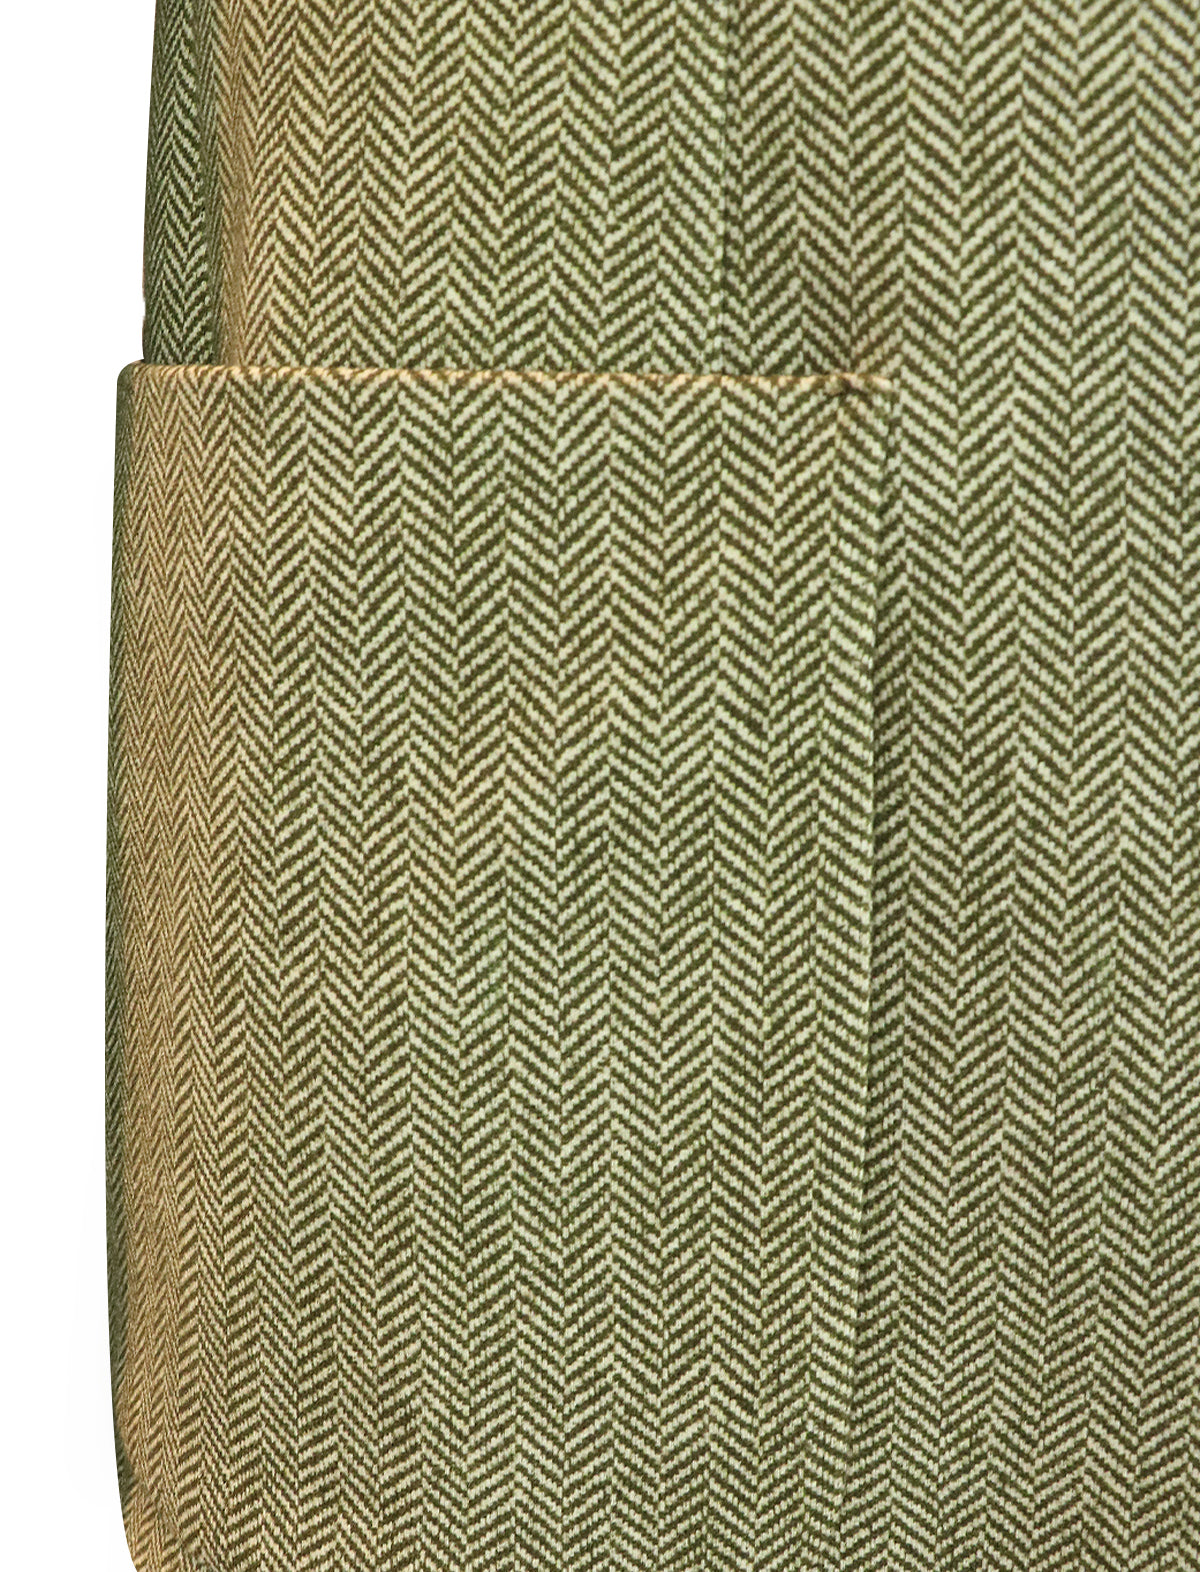 CIRCOLO 1901 Single-Breasted Herringbone Blazer in Caper Green